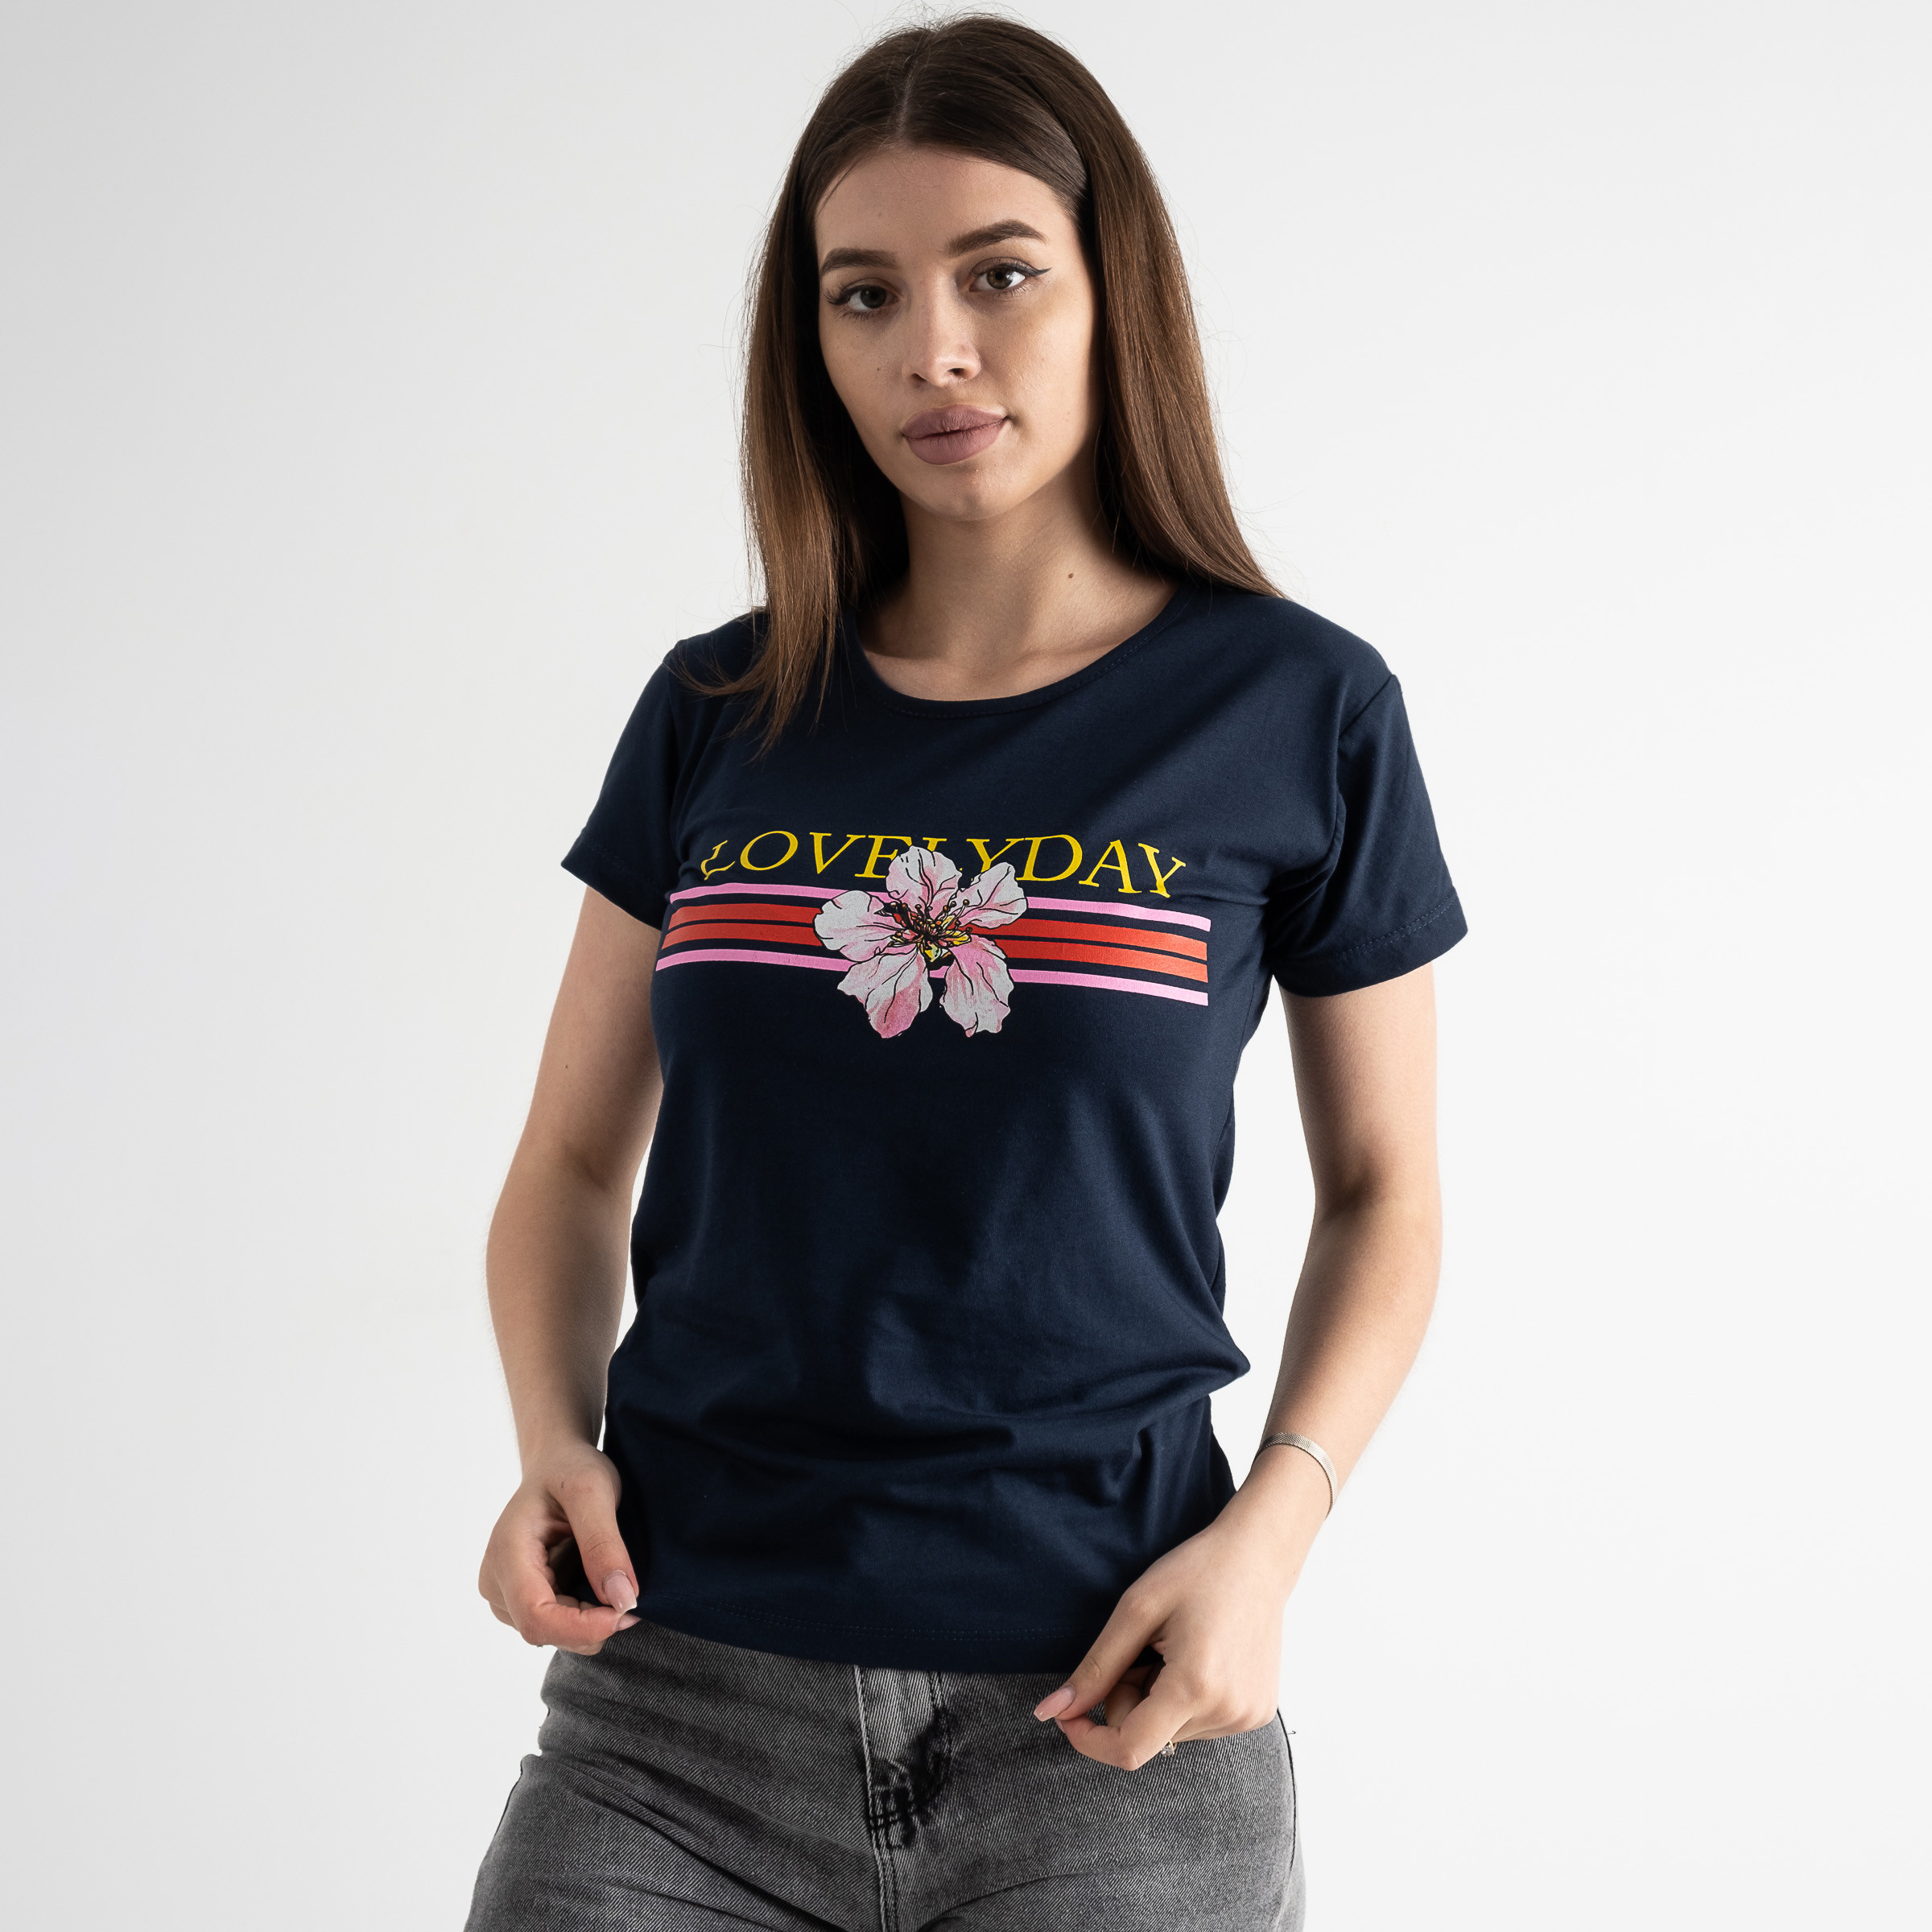 5004-9 ТЕМНО-СИНЯЯ Kafkame футболка женская с принтом ( 4 ед. размеры : S.M.L.XL)